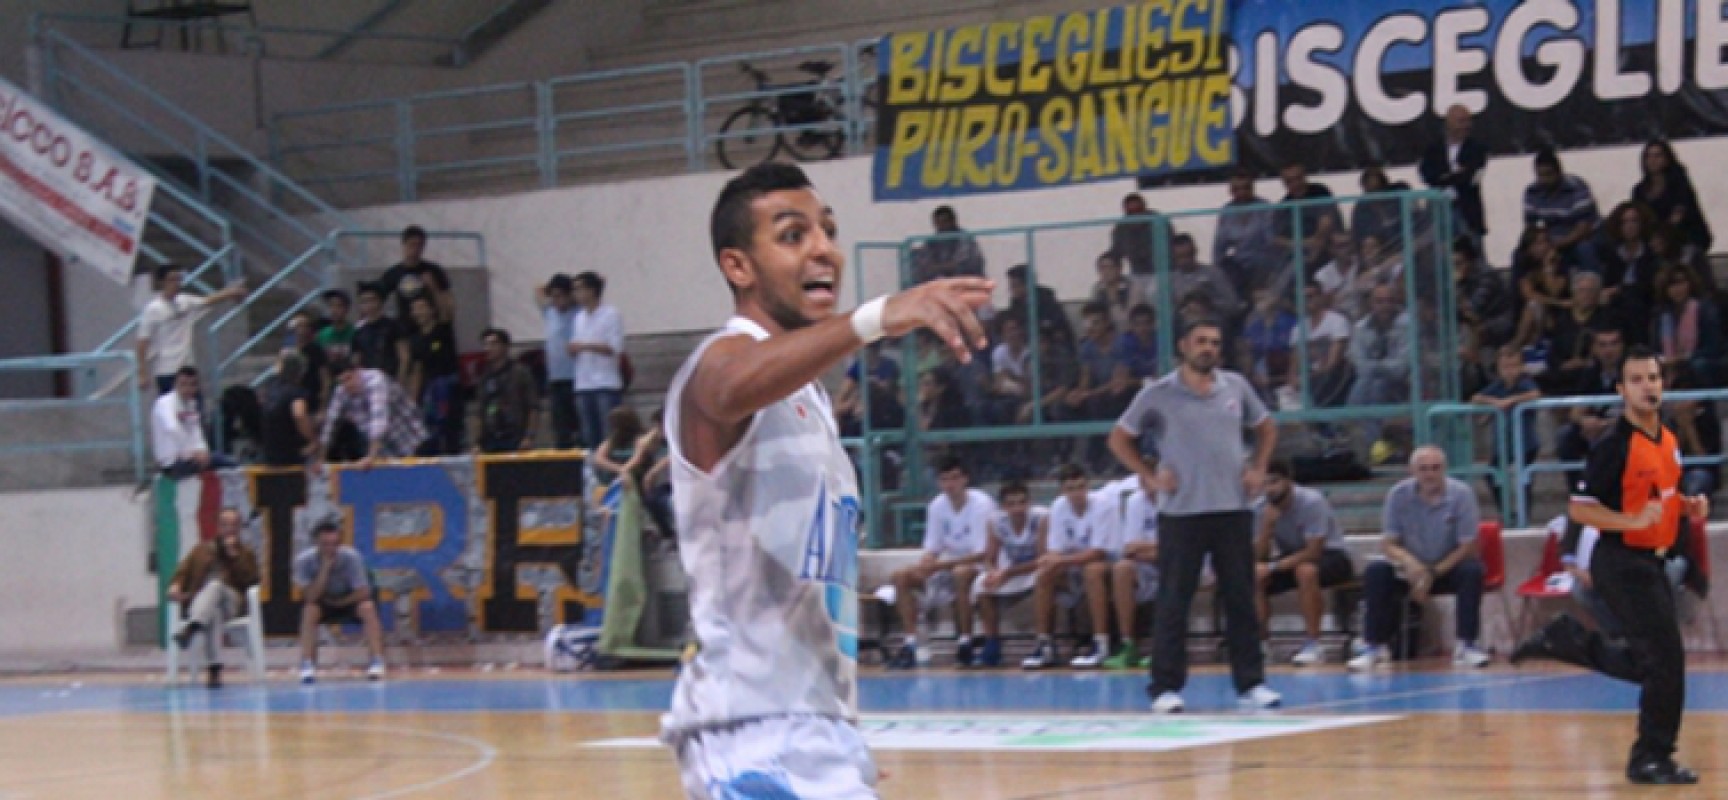 Playoff Ambrosia Basket Bisceglie, le dichiarazioni di Abassi su gara 2 contro Martina